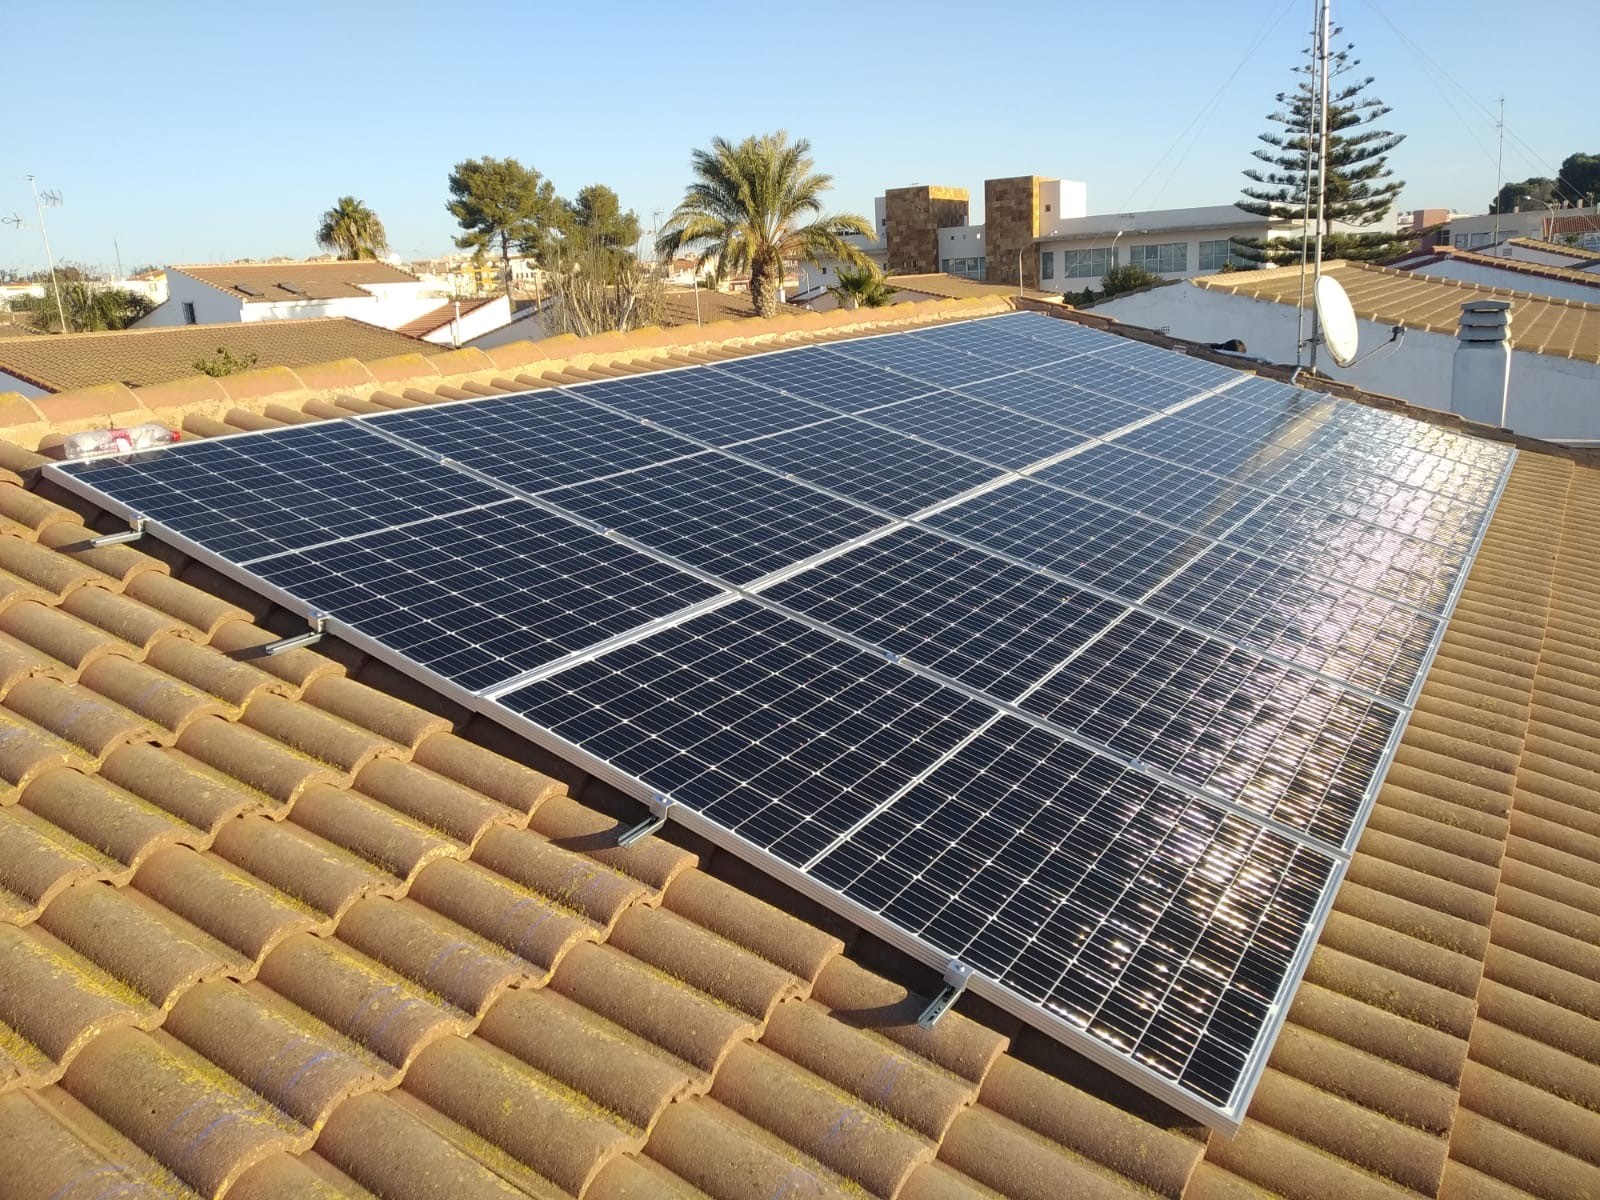 placas fotovoltaicas instaladas en un tejado por Bara Dynamics